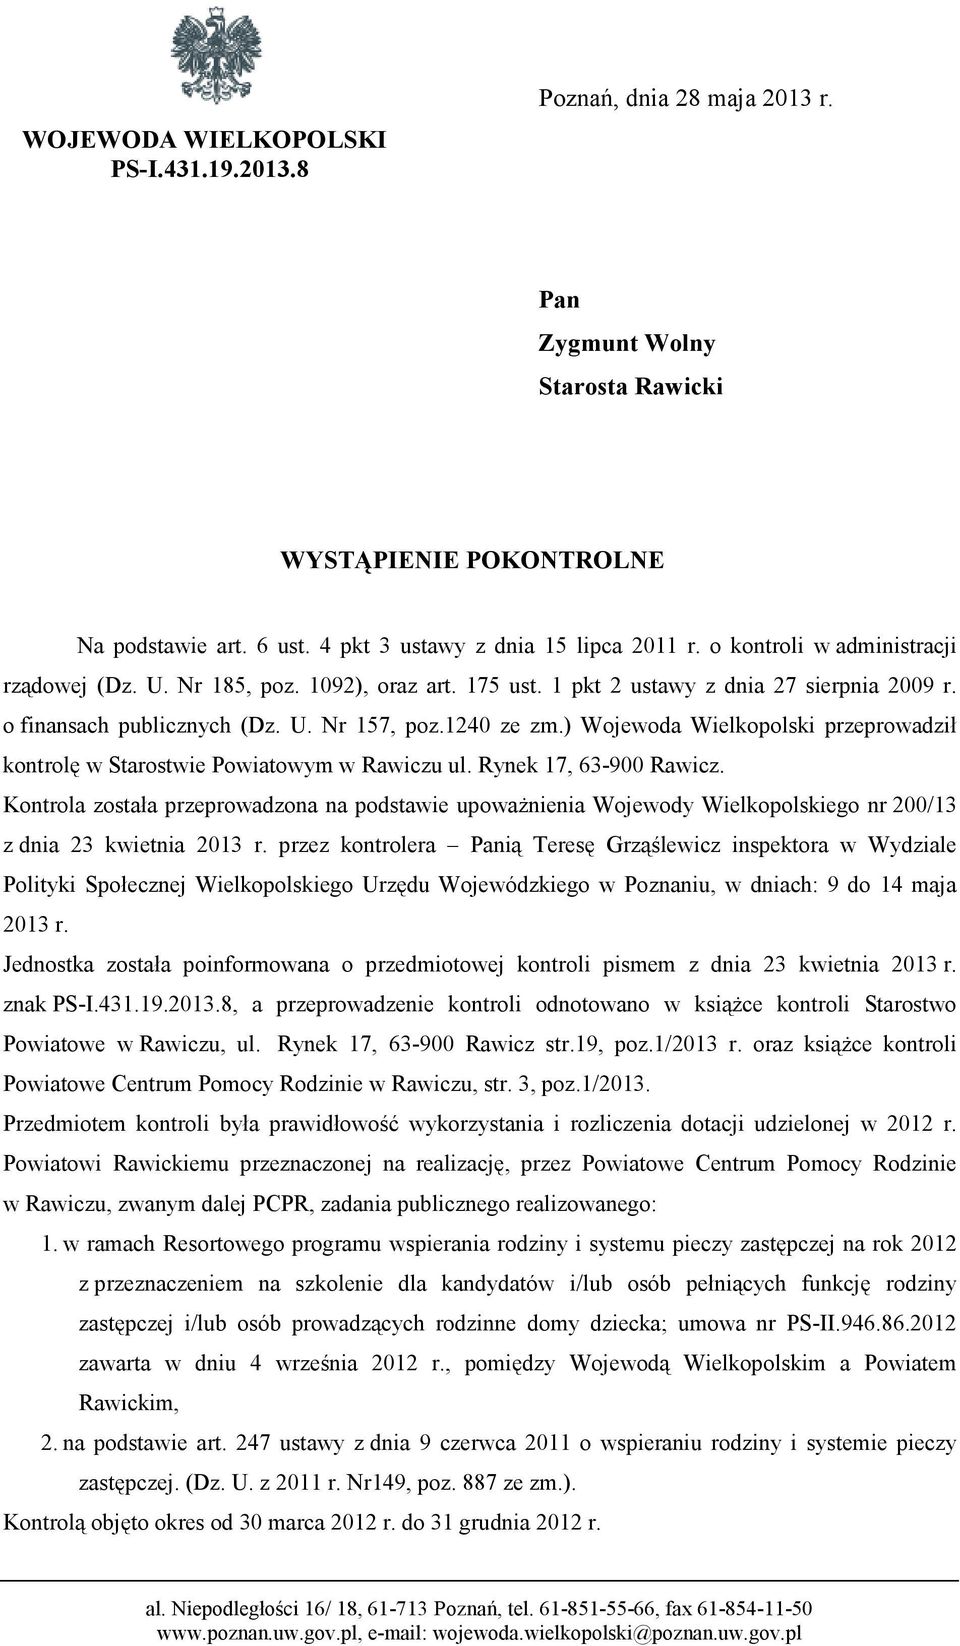 ) Wojewoda Wielkopolski przeprowadził kontrolę w Starostwie Powiatowym w Rawiczu ul. Rynek 17, 63-900 Rawicz.